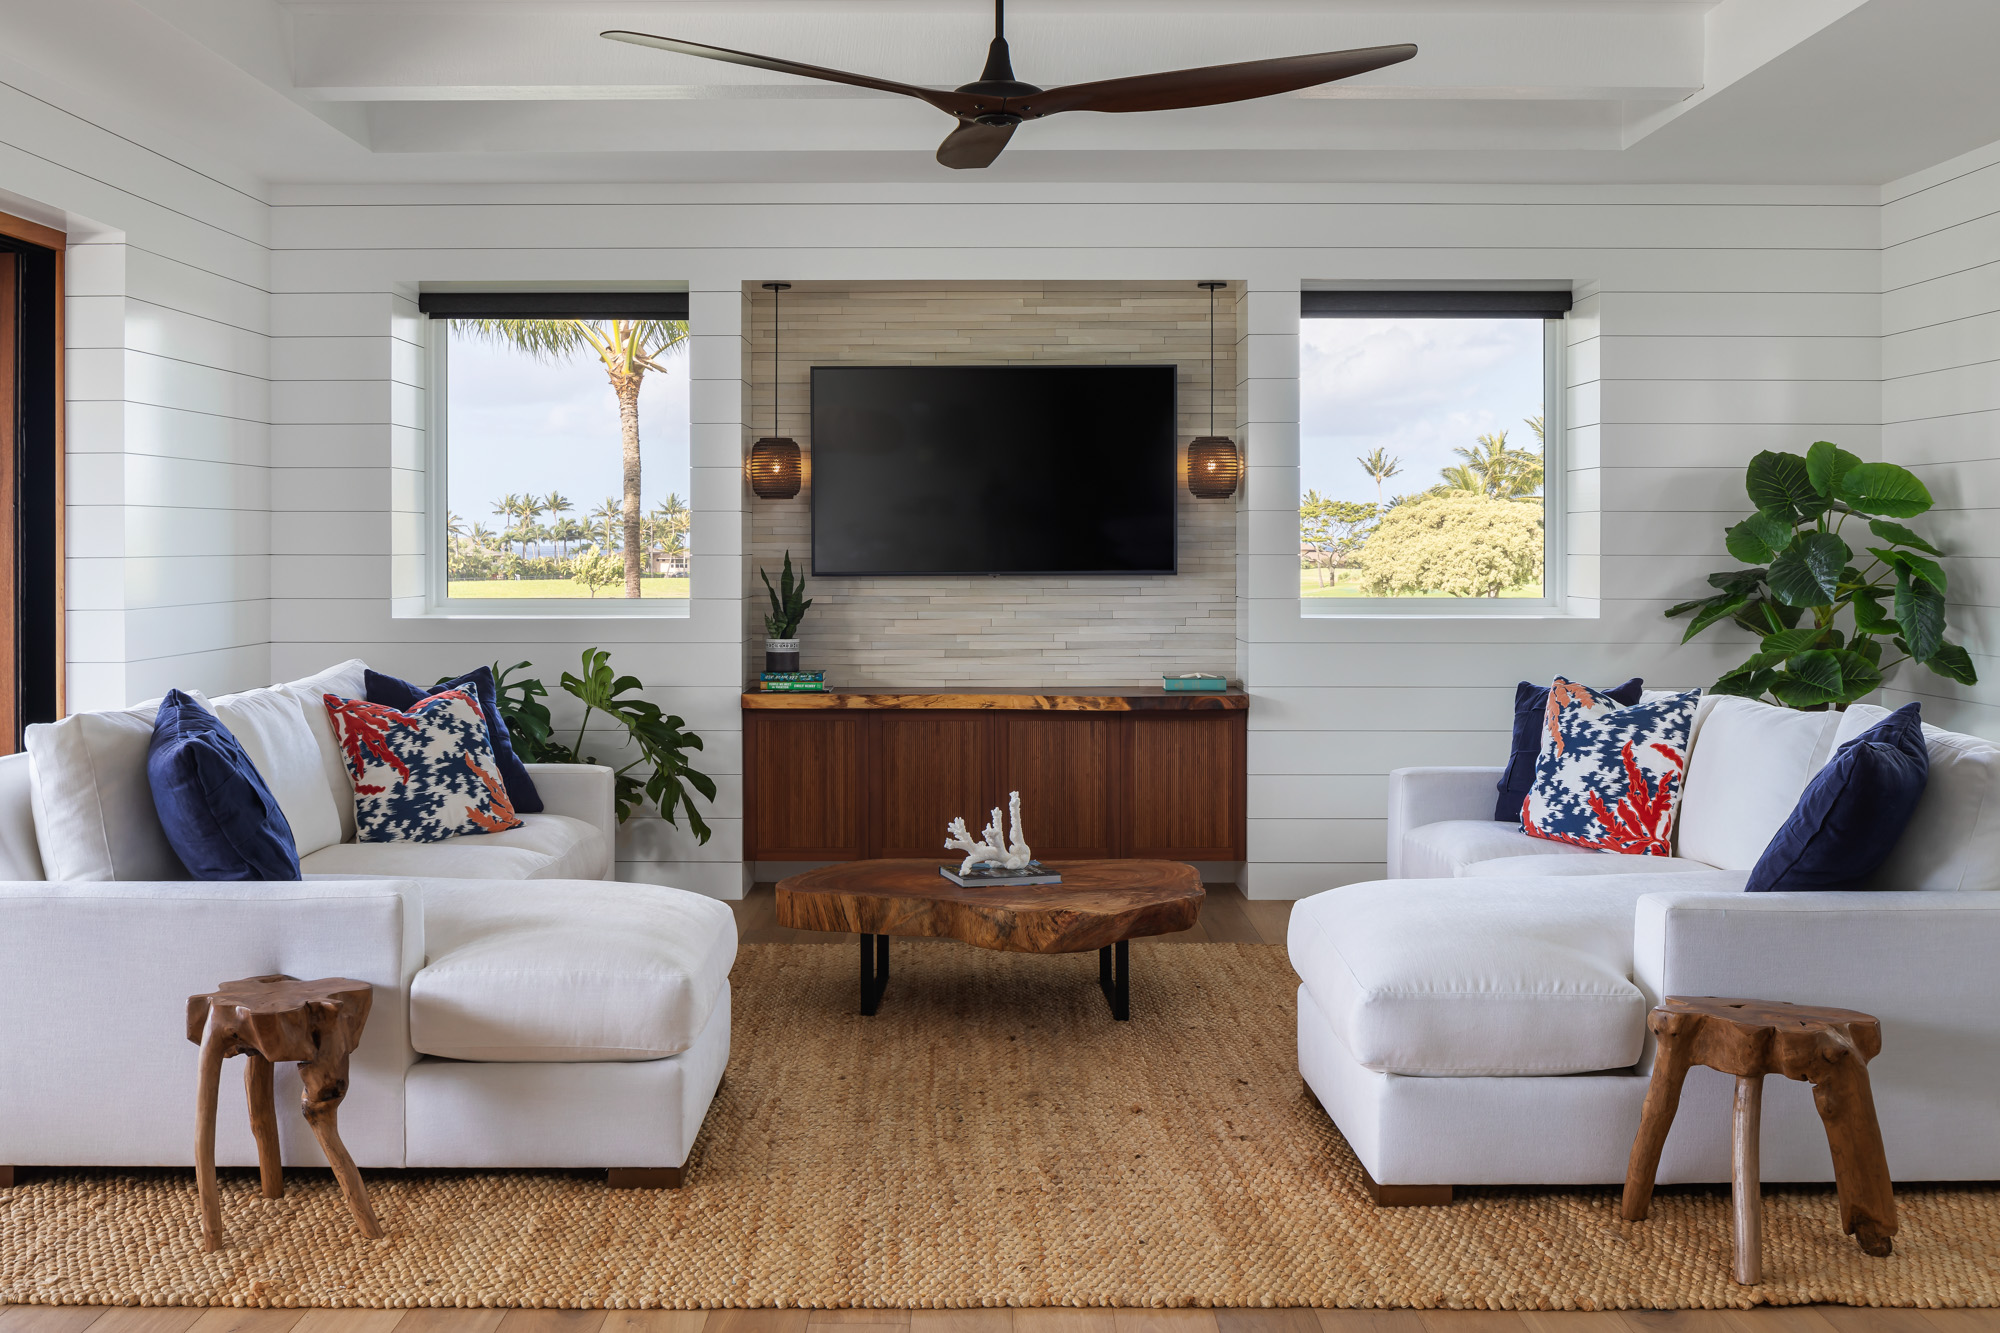 Hawaiian Style Interiors - The Wicker House